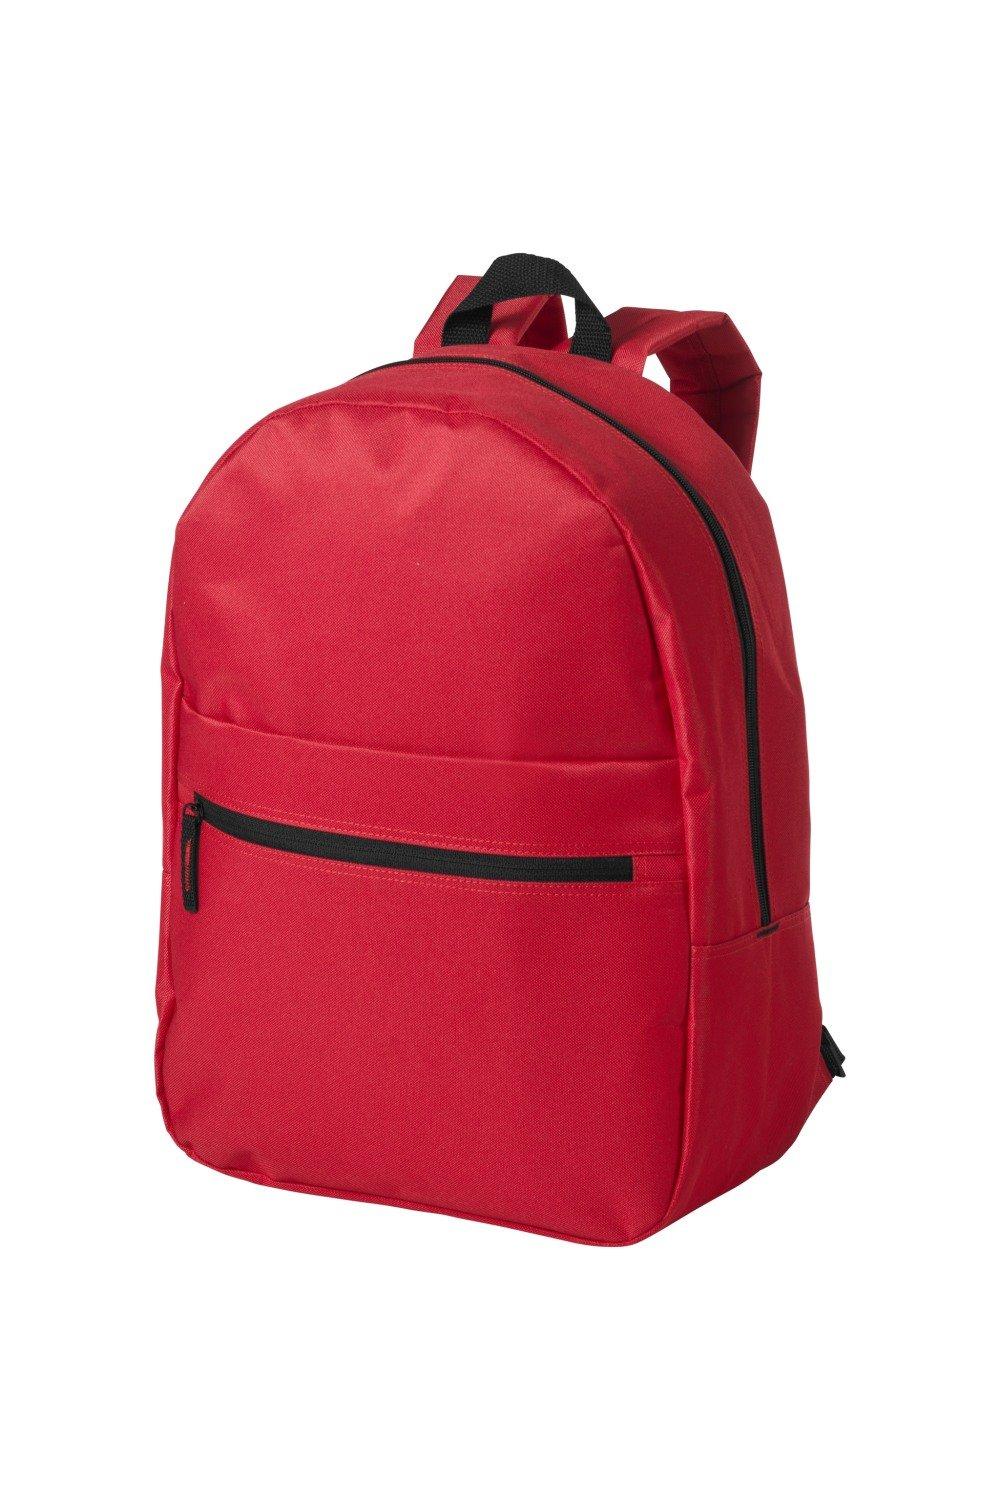 Ванкуверский рюкзак Bullet, красный рюкзак с карманом единорог